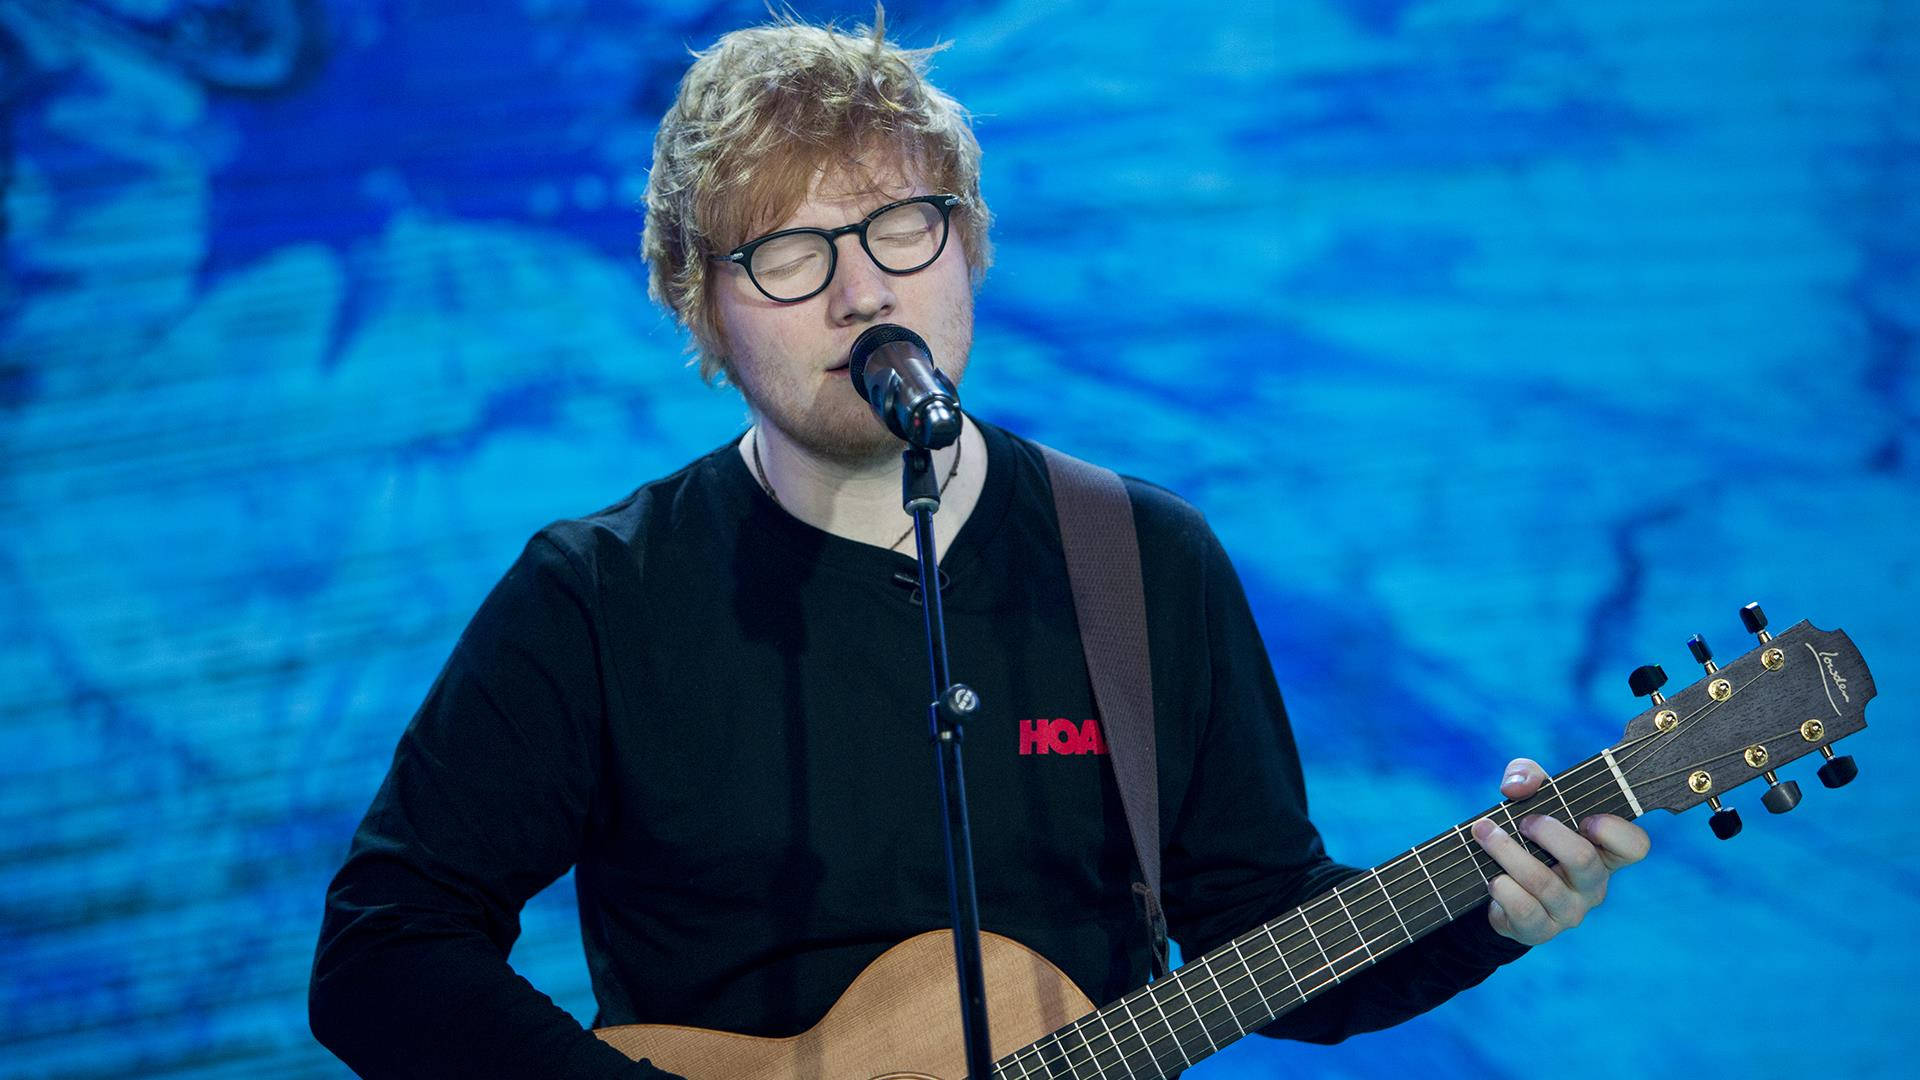 Image Ed Sheeran Singing Live Background